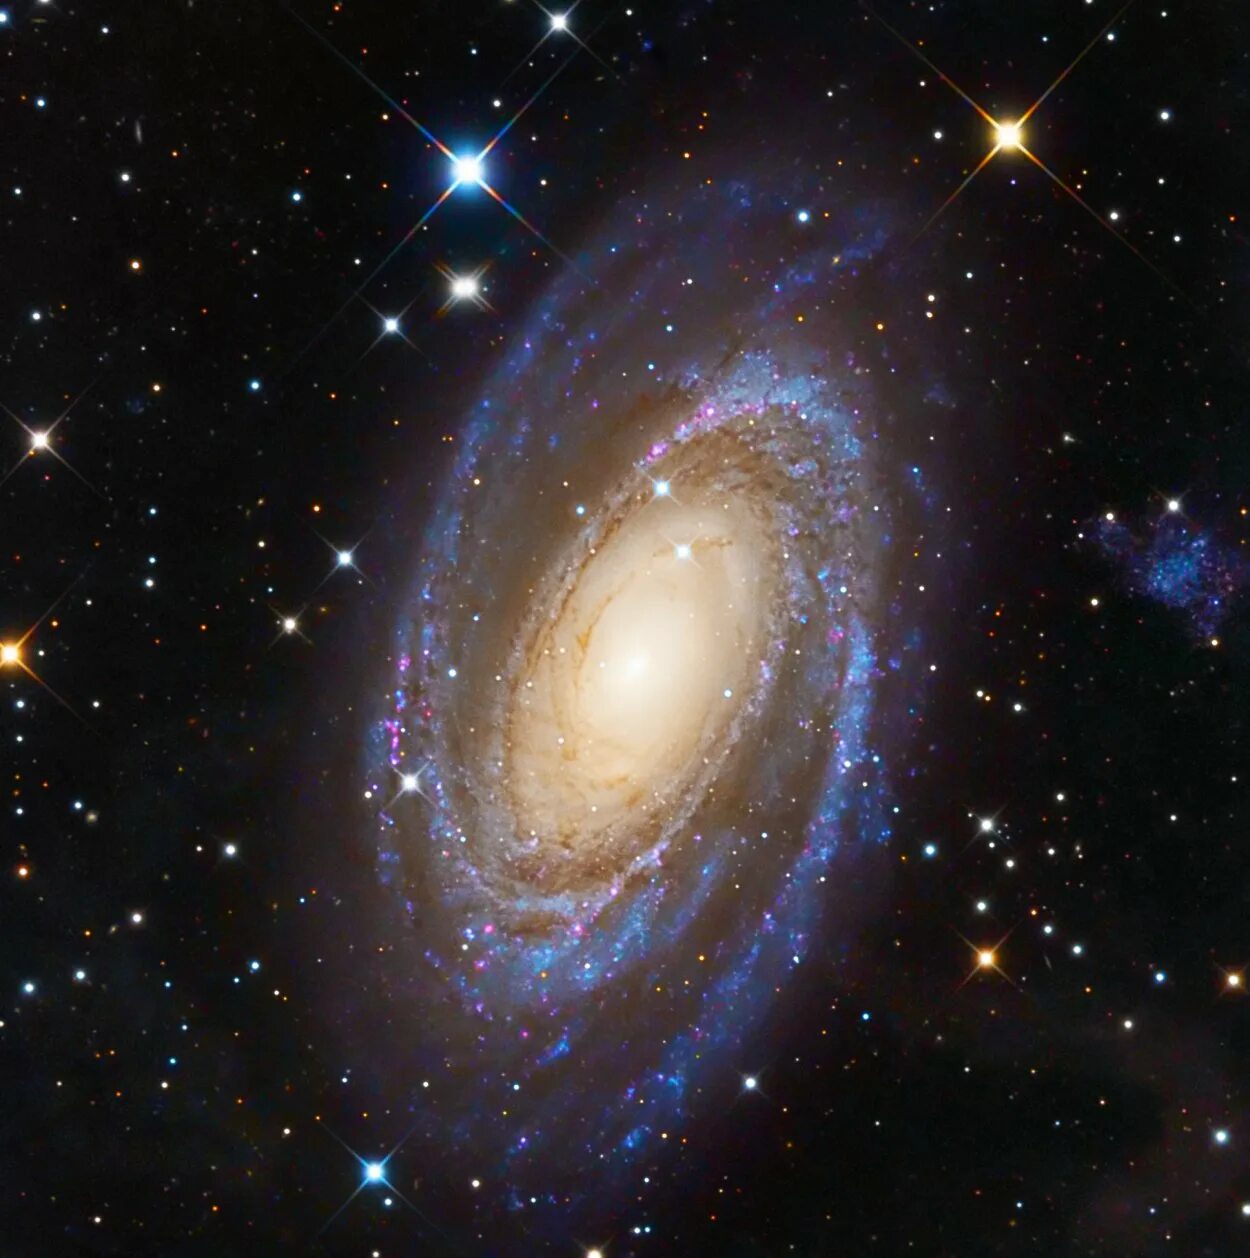 M81 Галактика. Космос Галактика Млечный путь. Галактика Боде м81. Звездная система в галактике Млечный путь. Солнце яркая звезда галактики